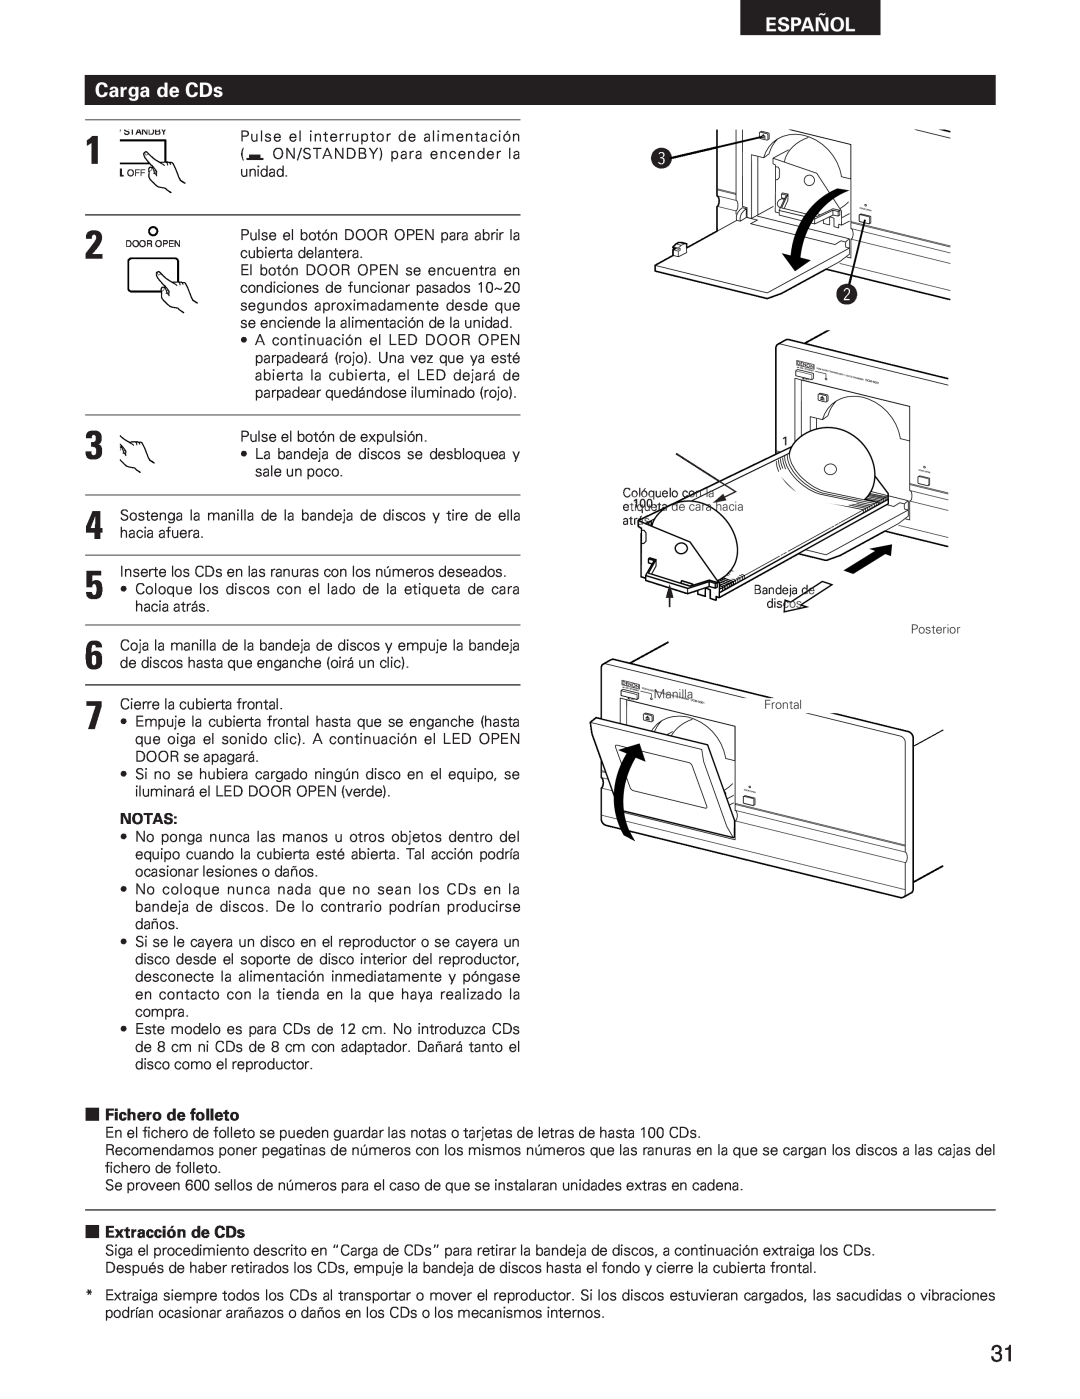 Denon DCM-5001 manual Carga de CDs, 2Fichero de folleto, 2Extracción de CDs, Español 